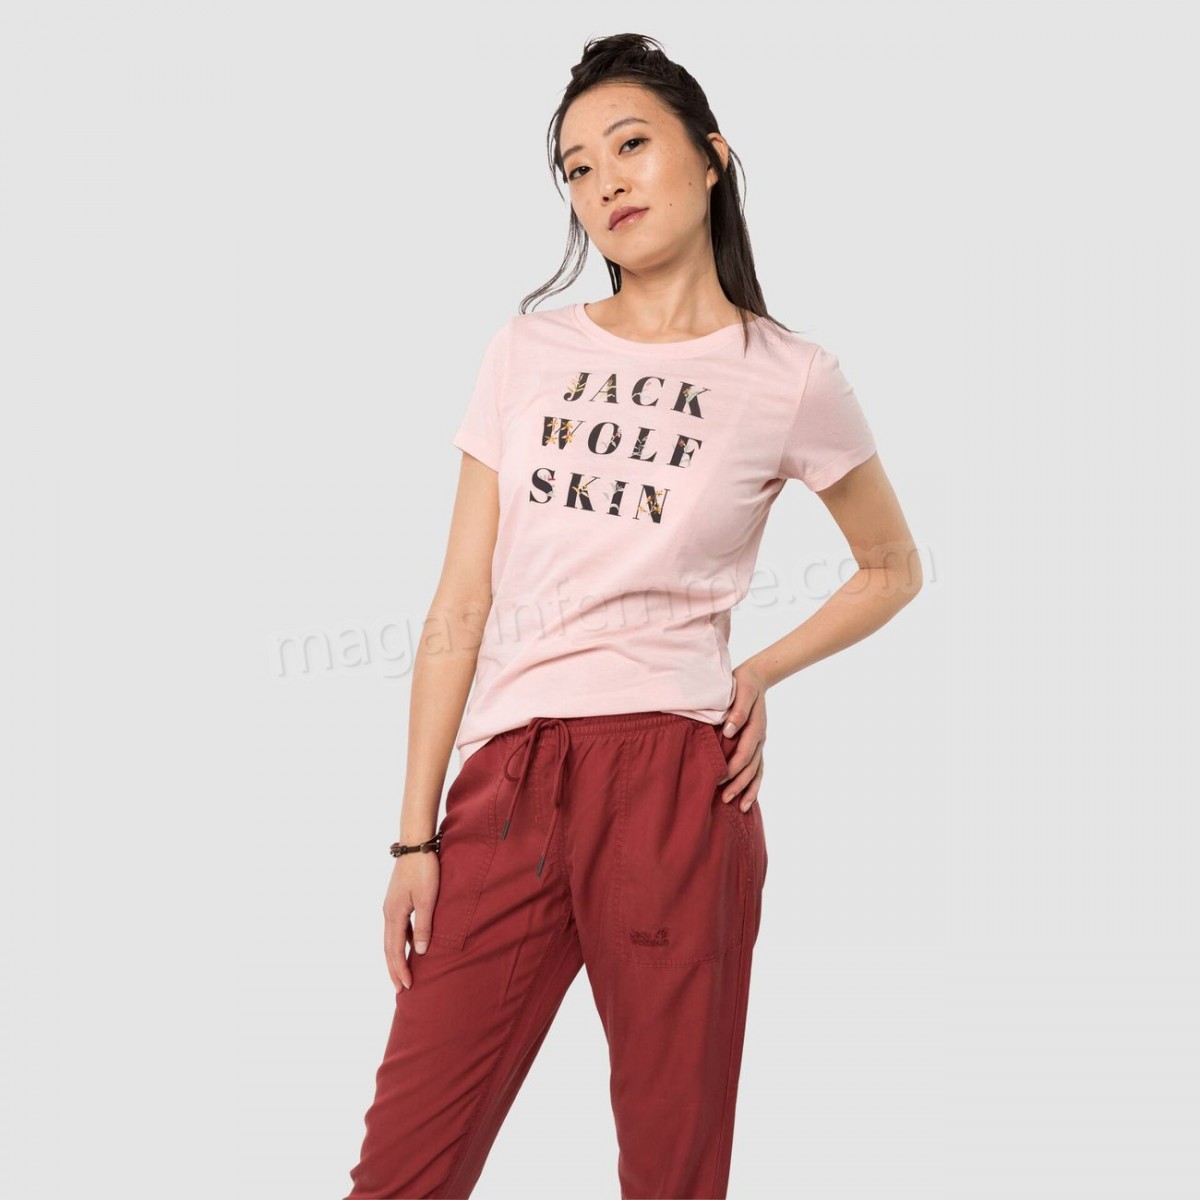 Jack Wolfskin-Randonnée pédestre femme JACK WOLFSKIN T-shirt Femme Jack Wolfskin Flower Letter T W Blush Pink en solde - -0